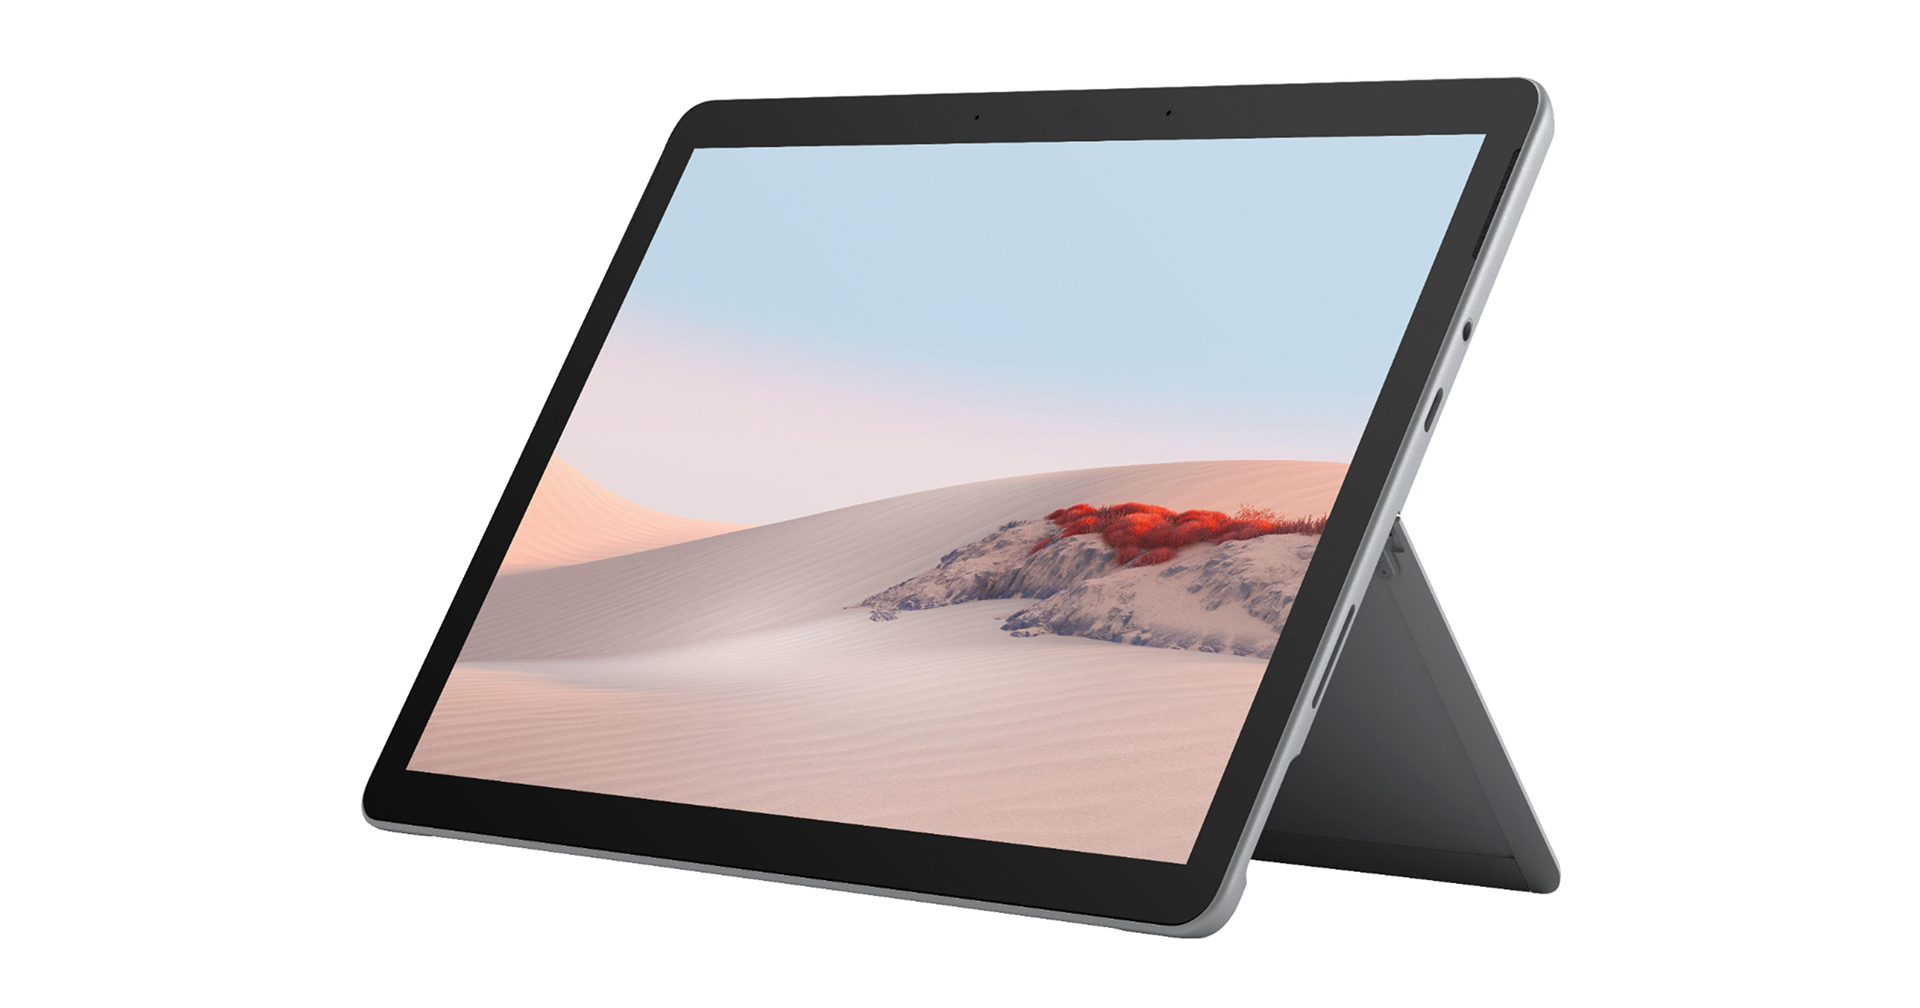 หลุดสเปก Microsoft Surface Go 3 ก่อนเปิดตัวจริง 22 ก.ย. นี้